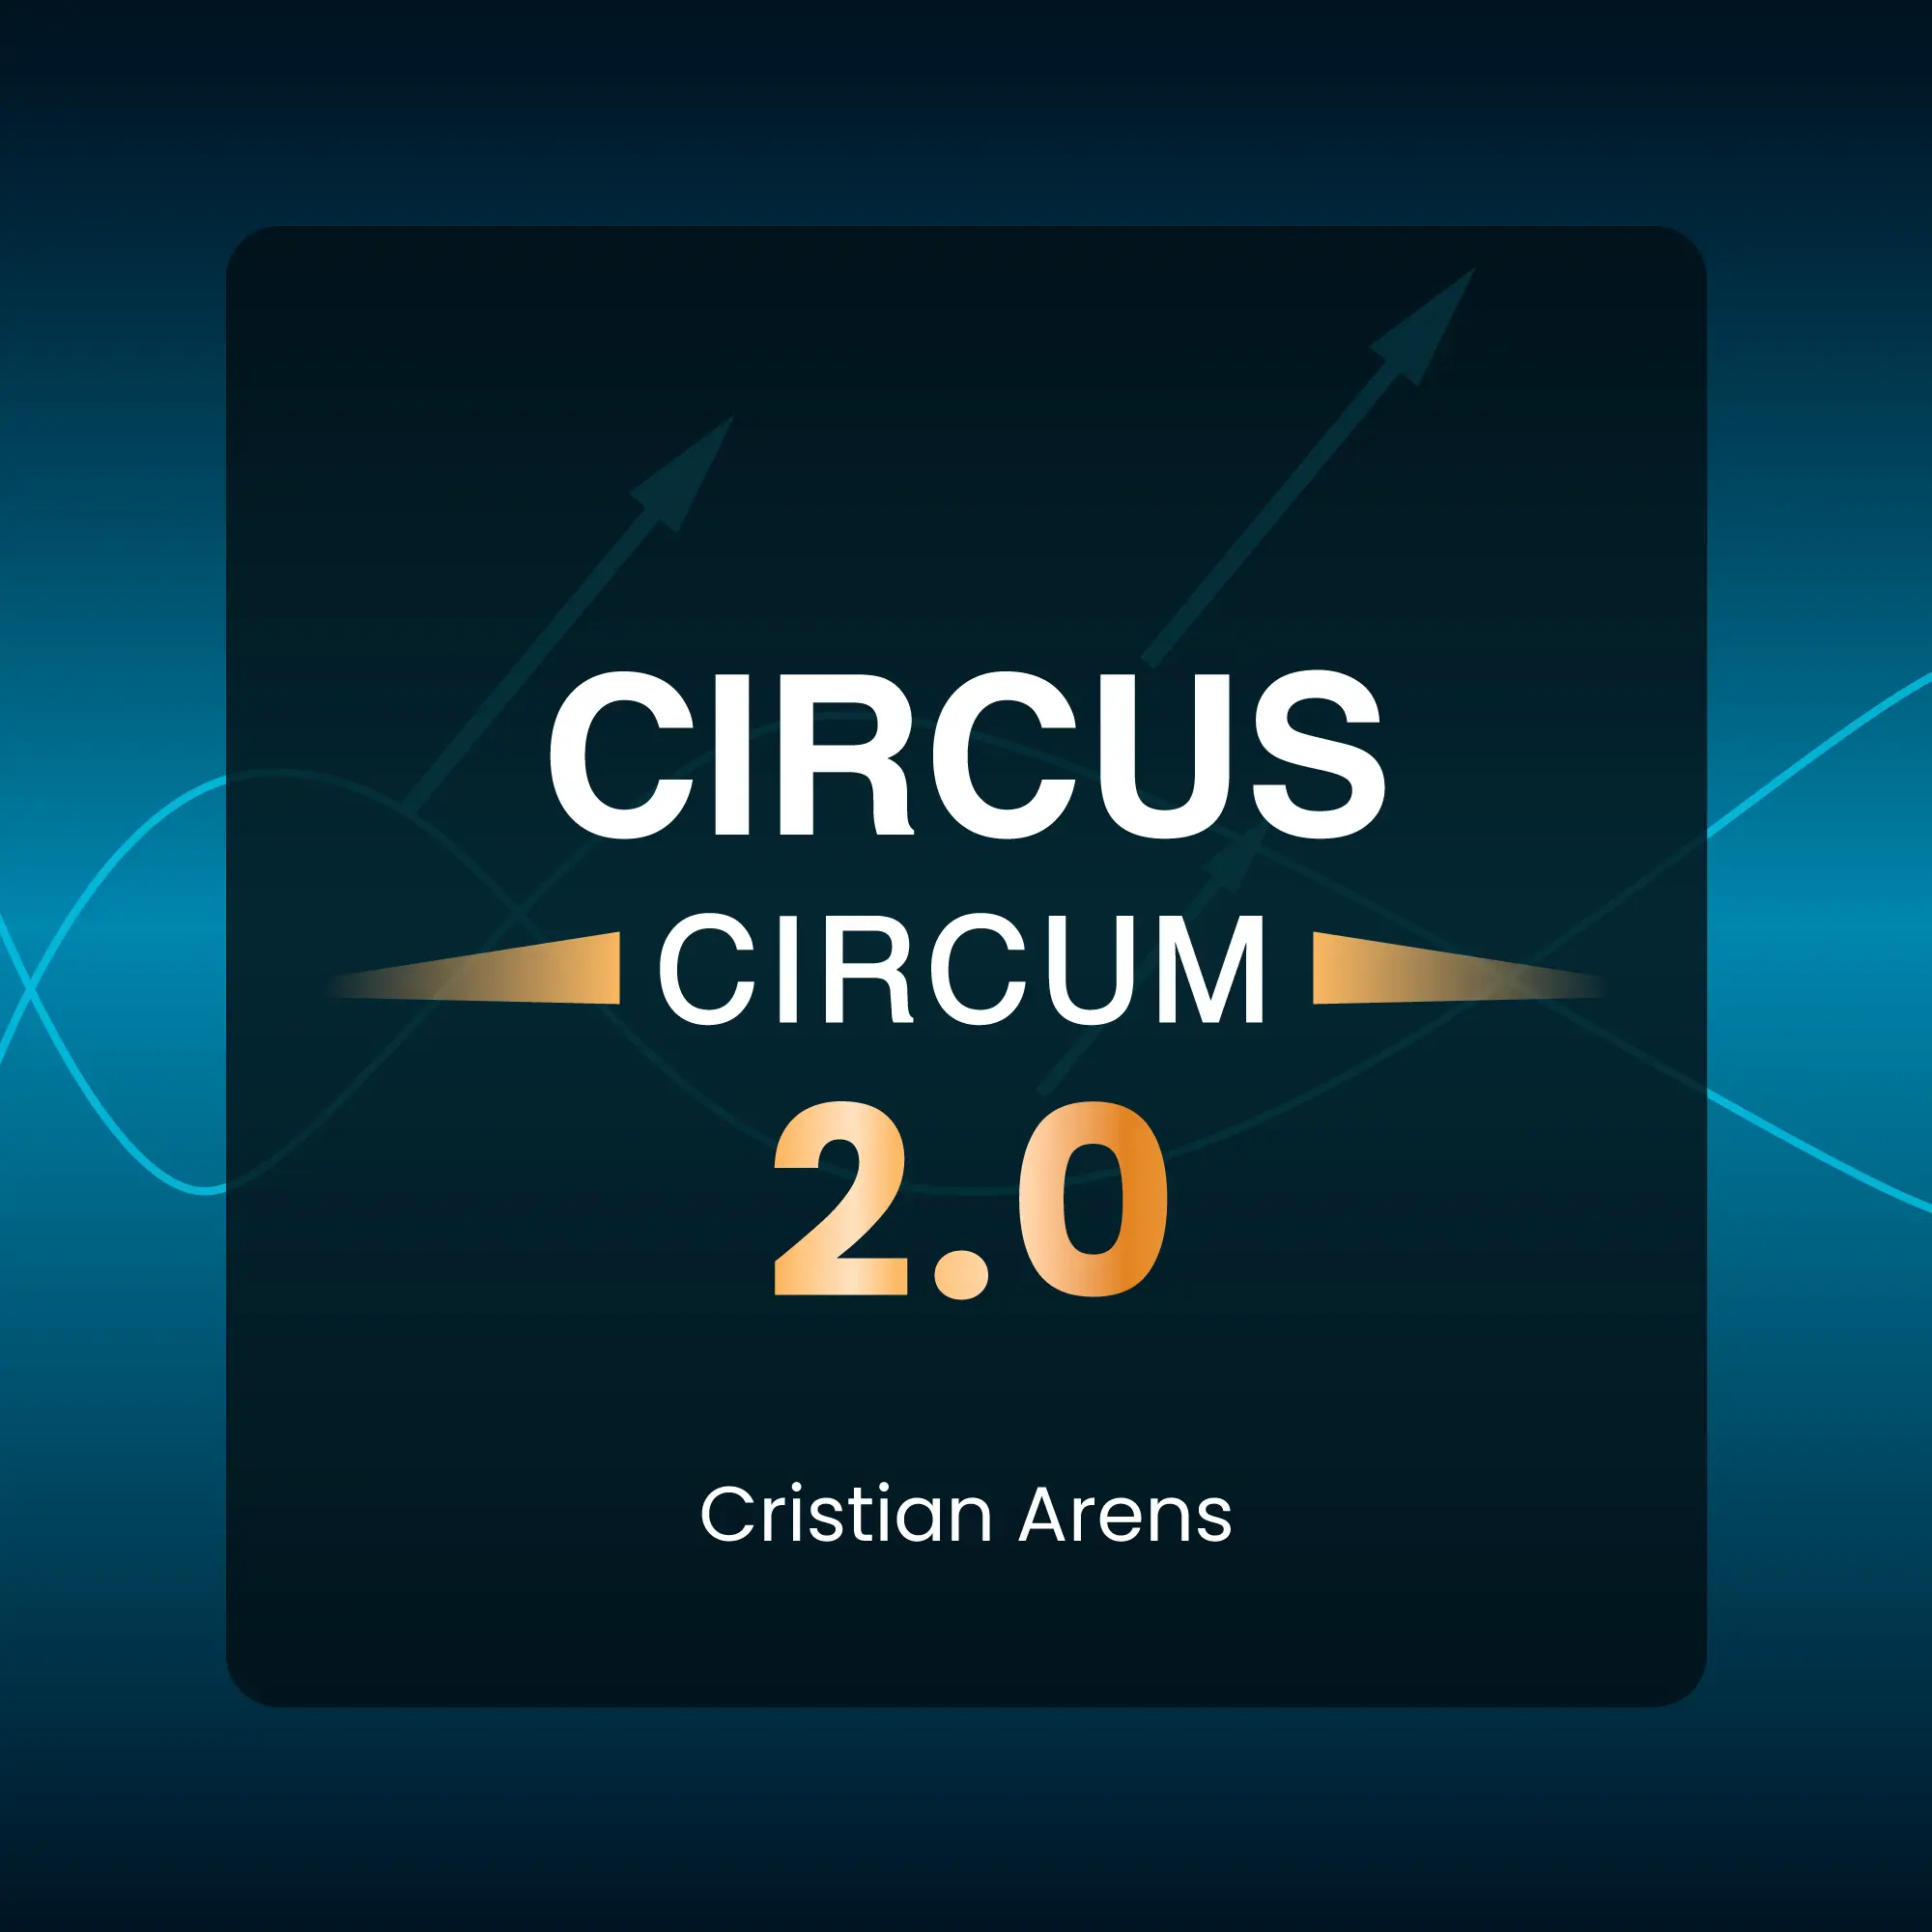 Circus circum